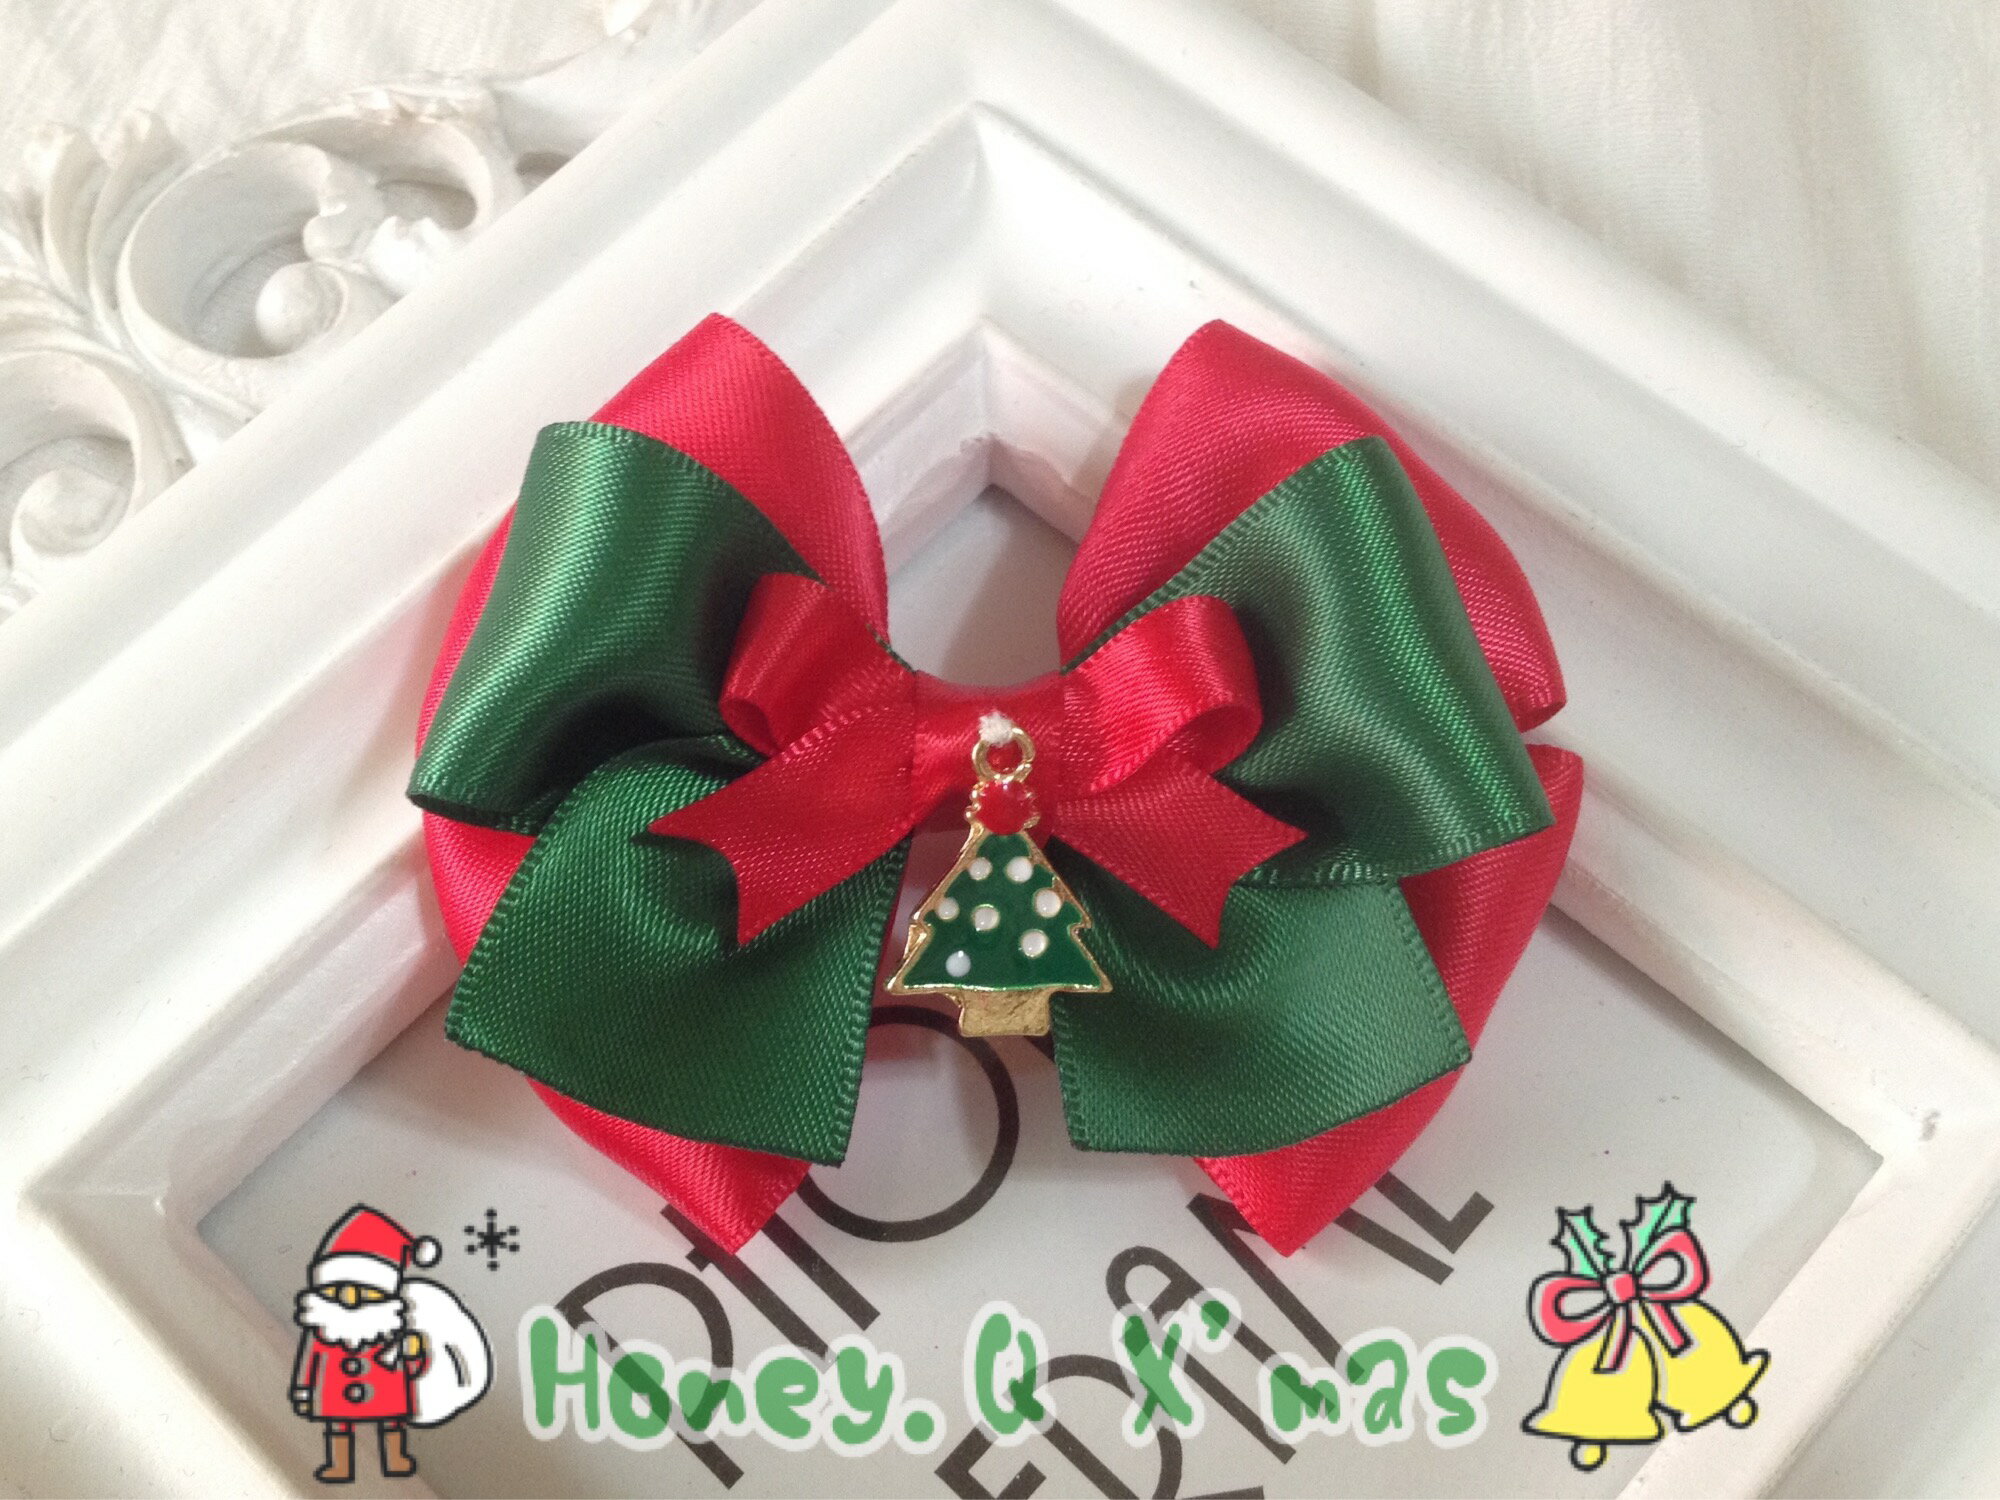 Honey Q-紅配綠的幸福耶誕樹雙層蝴蝶結.髮夾 / 髮束 / 髮箍 / 髮帶**收單至12/15**